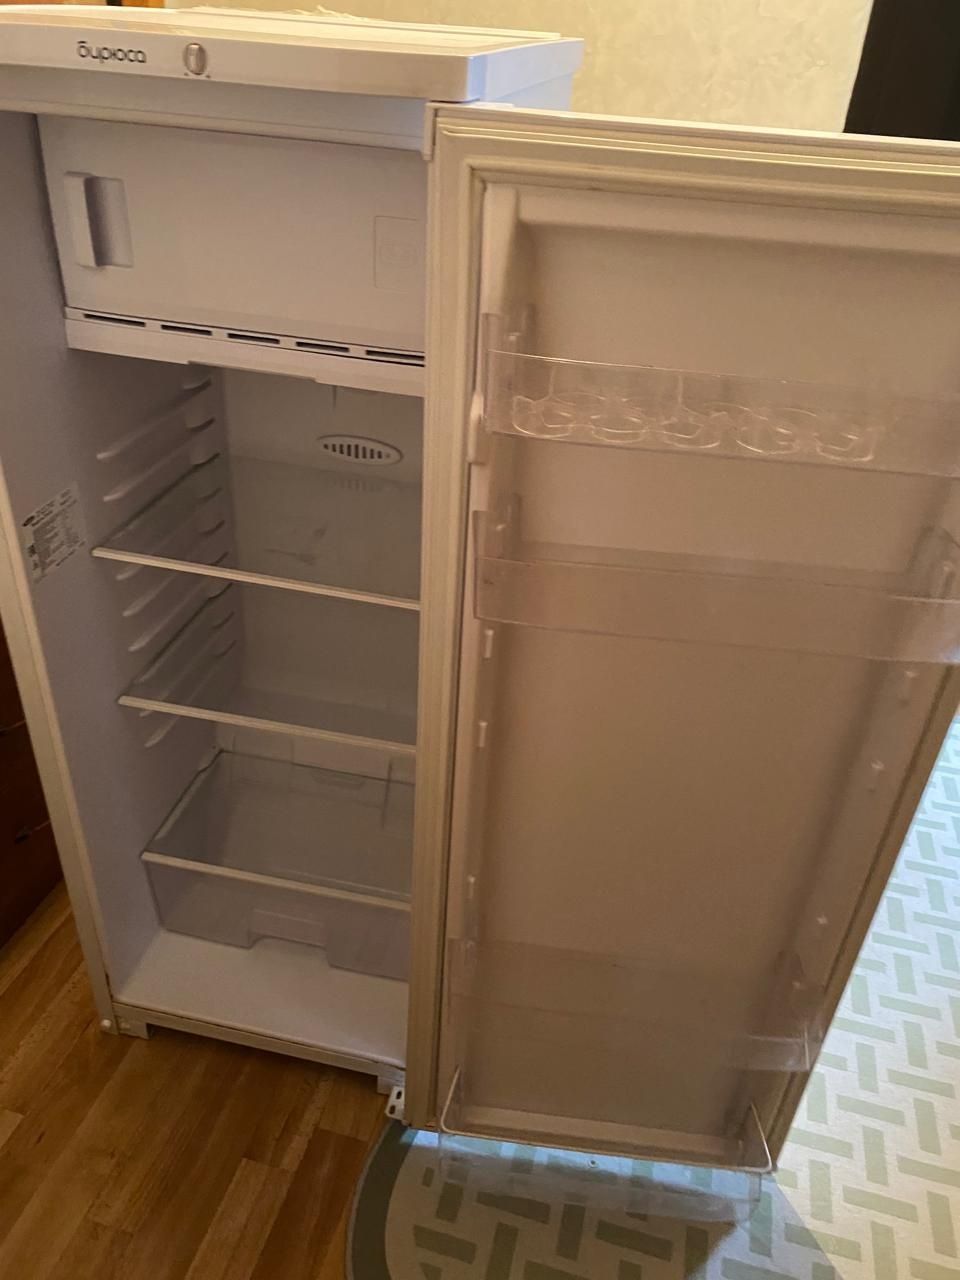 Продам холодильник пользовались 1год.Морозилка работает хорошо морозит